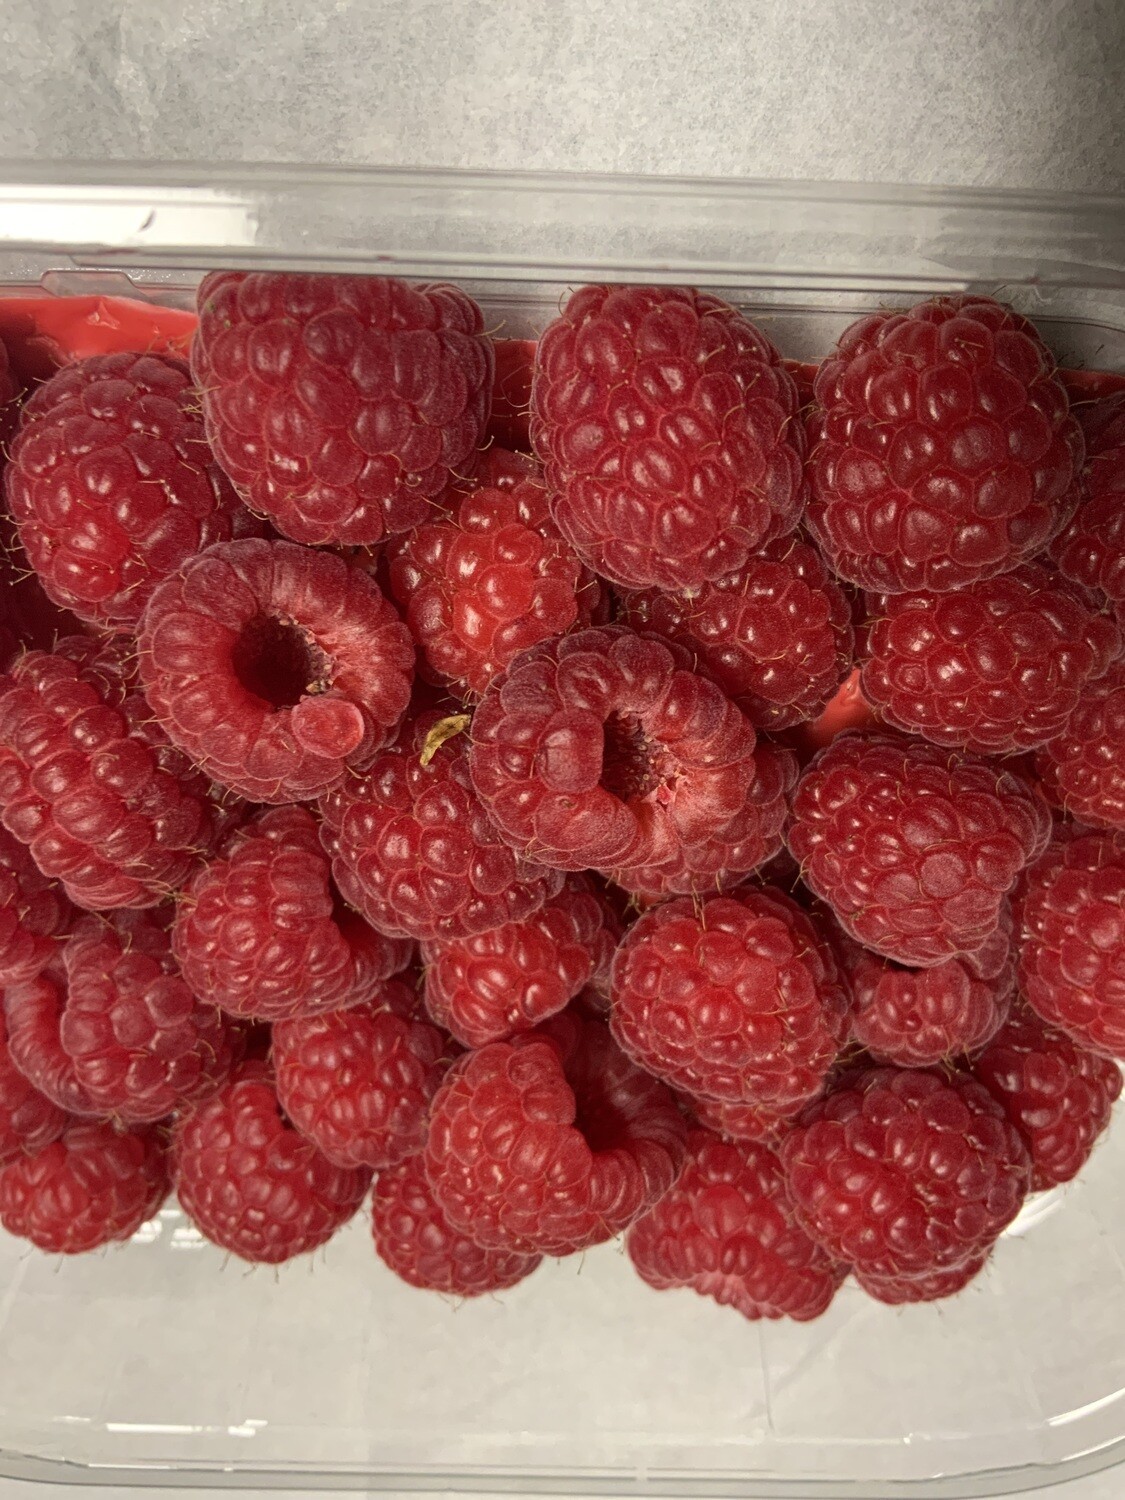 Raspberries. 145g. Spain